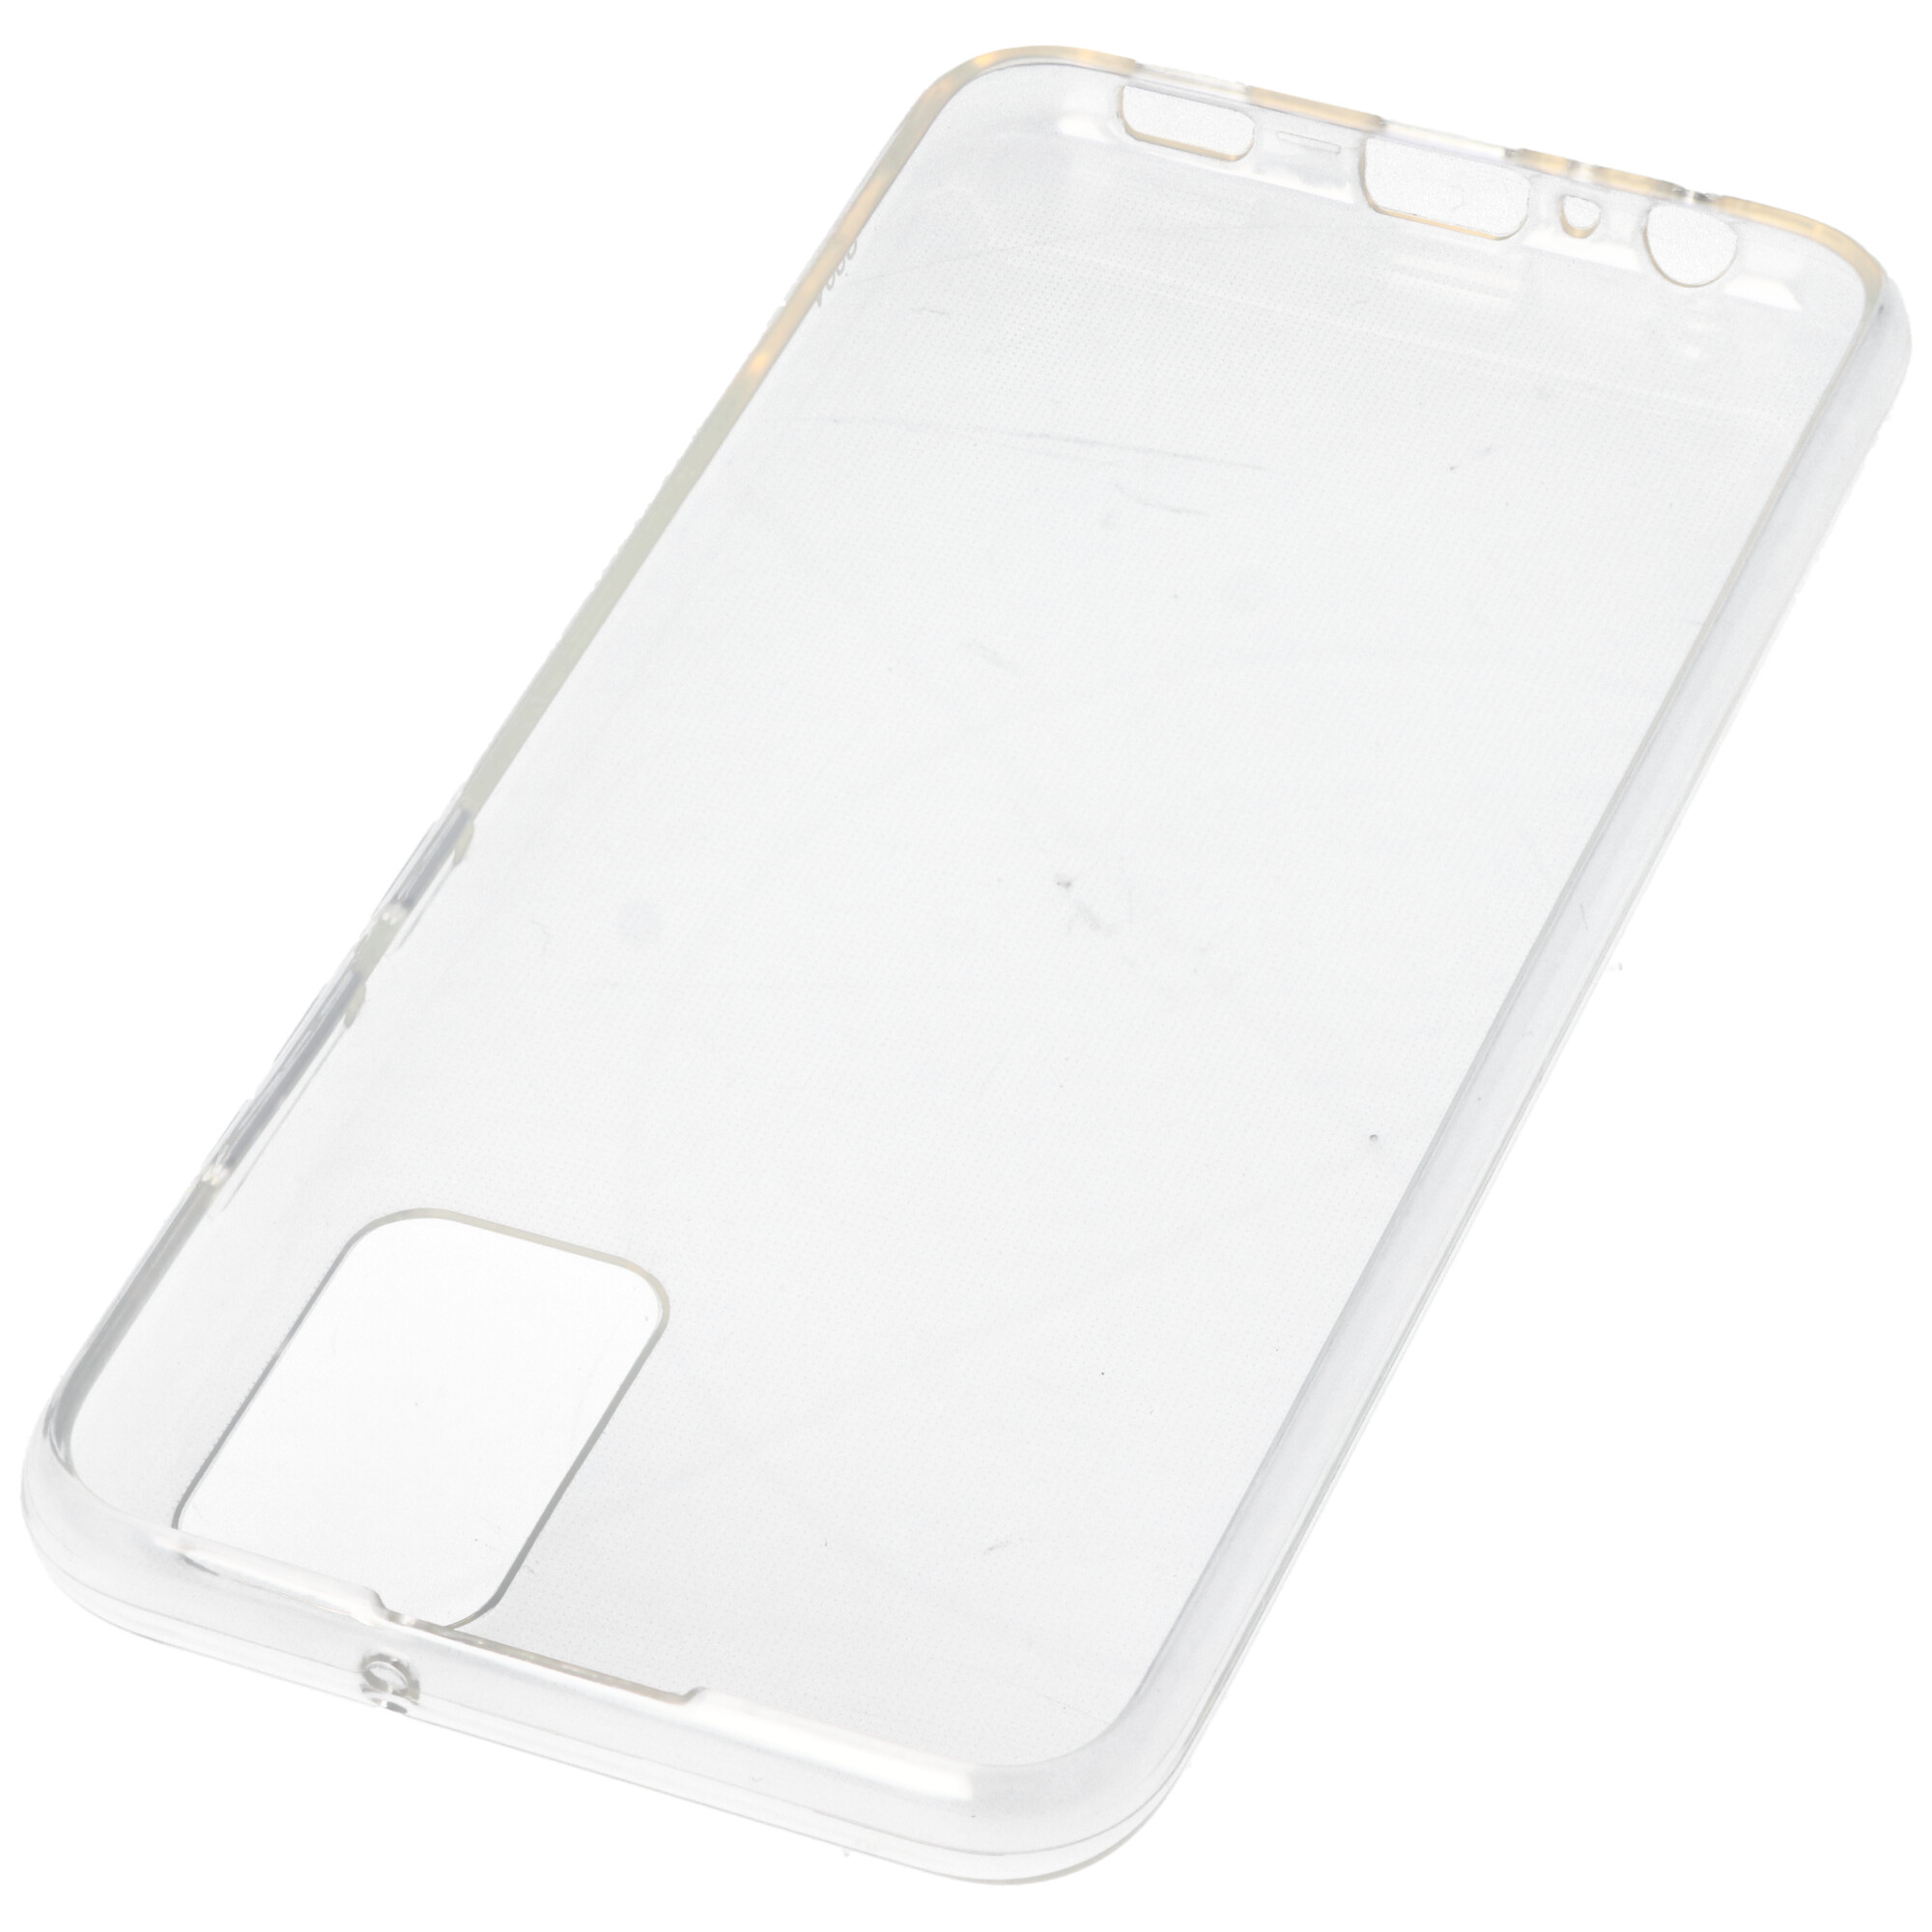 Hülle passend für Samsung Galaxy A02 S - transparente Schutzhülle, Anti-Gelb Luftkissen Fallschutz Silikon Handyhülle robustes TPU Case